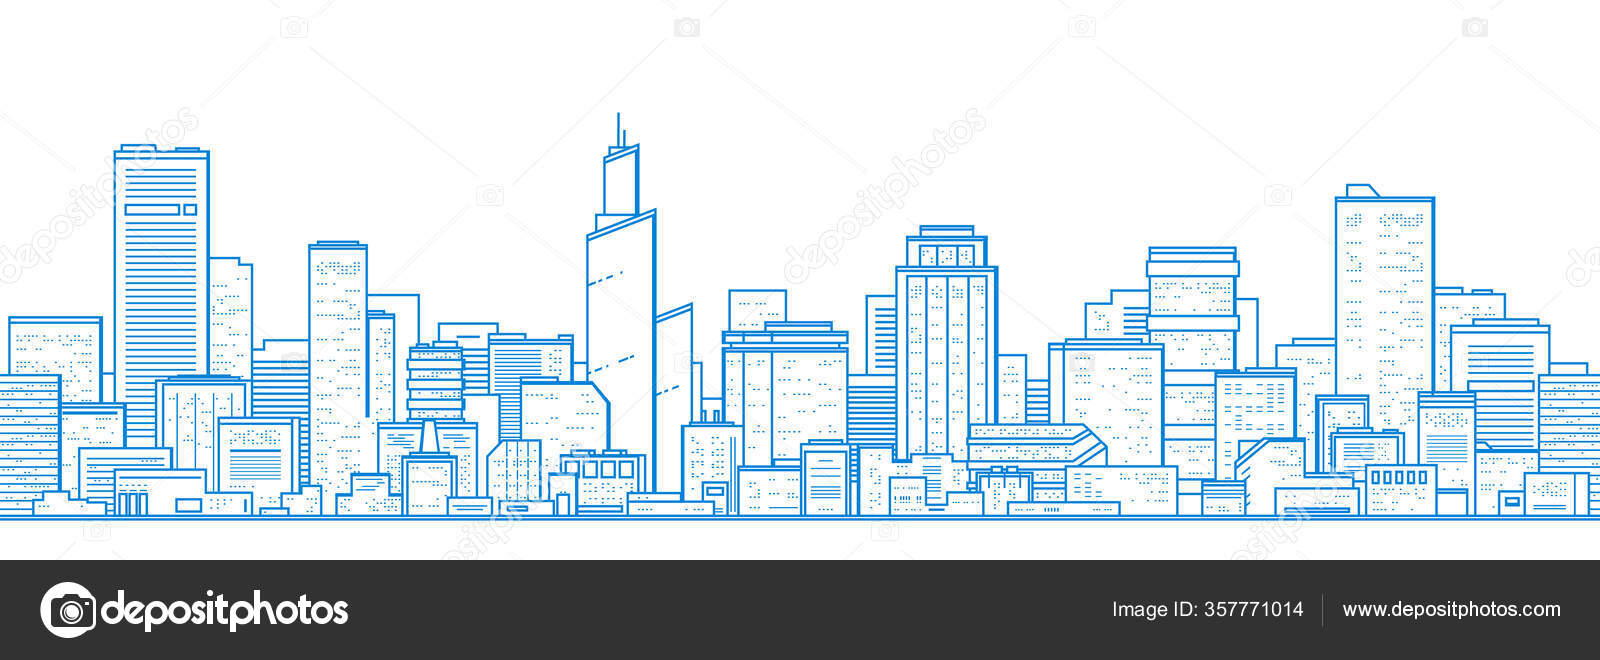 Vista aérea azul de edifícios da cidade, renderização em 3d de fundo azul  do mapa